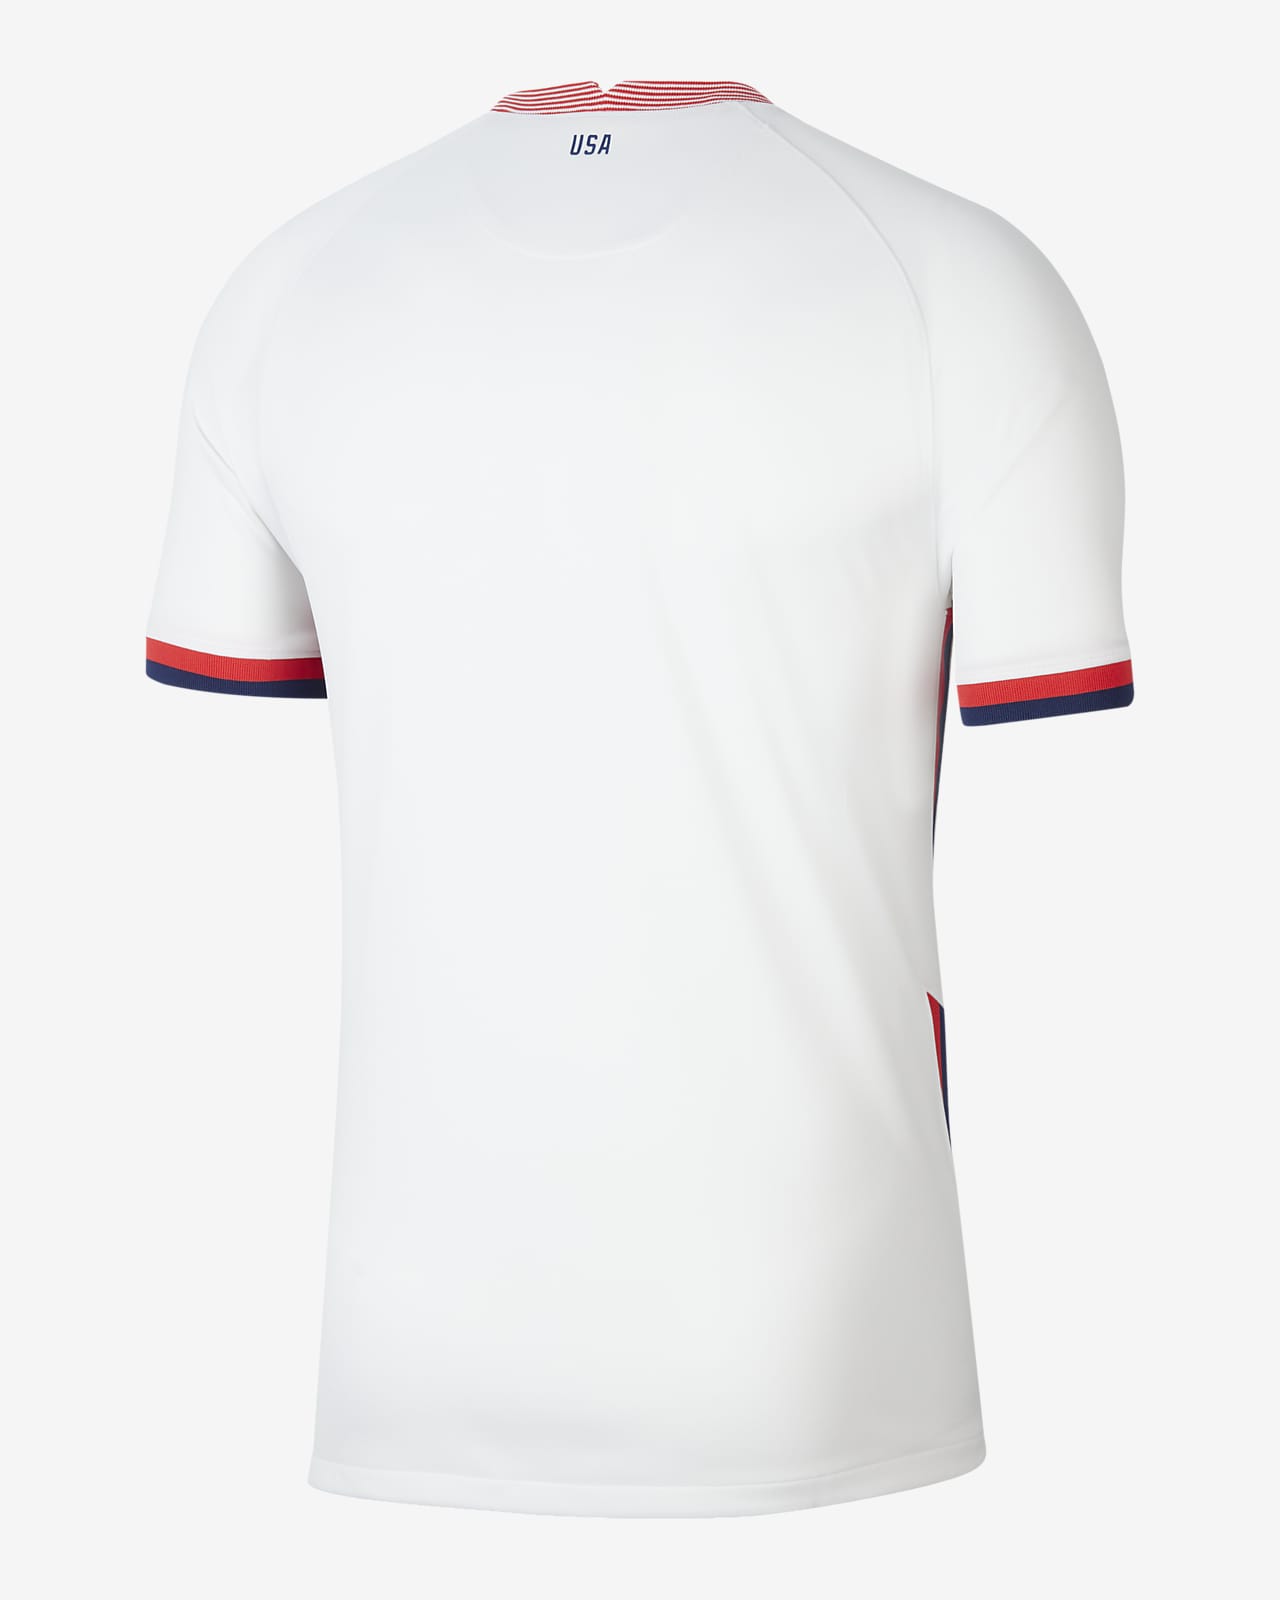 Camiseta de fútbol de local para hombre U.S. 2020 Stadium. Nike.com